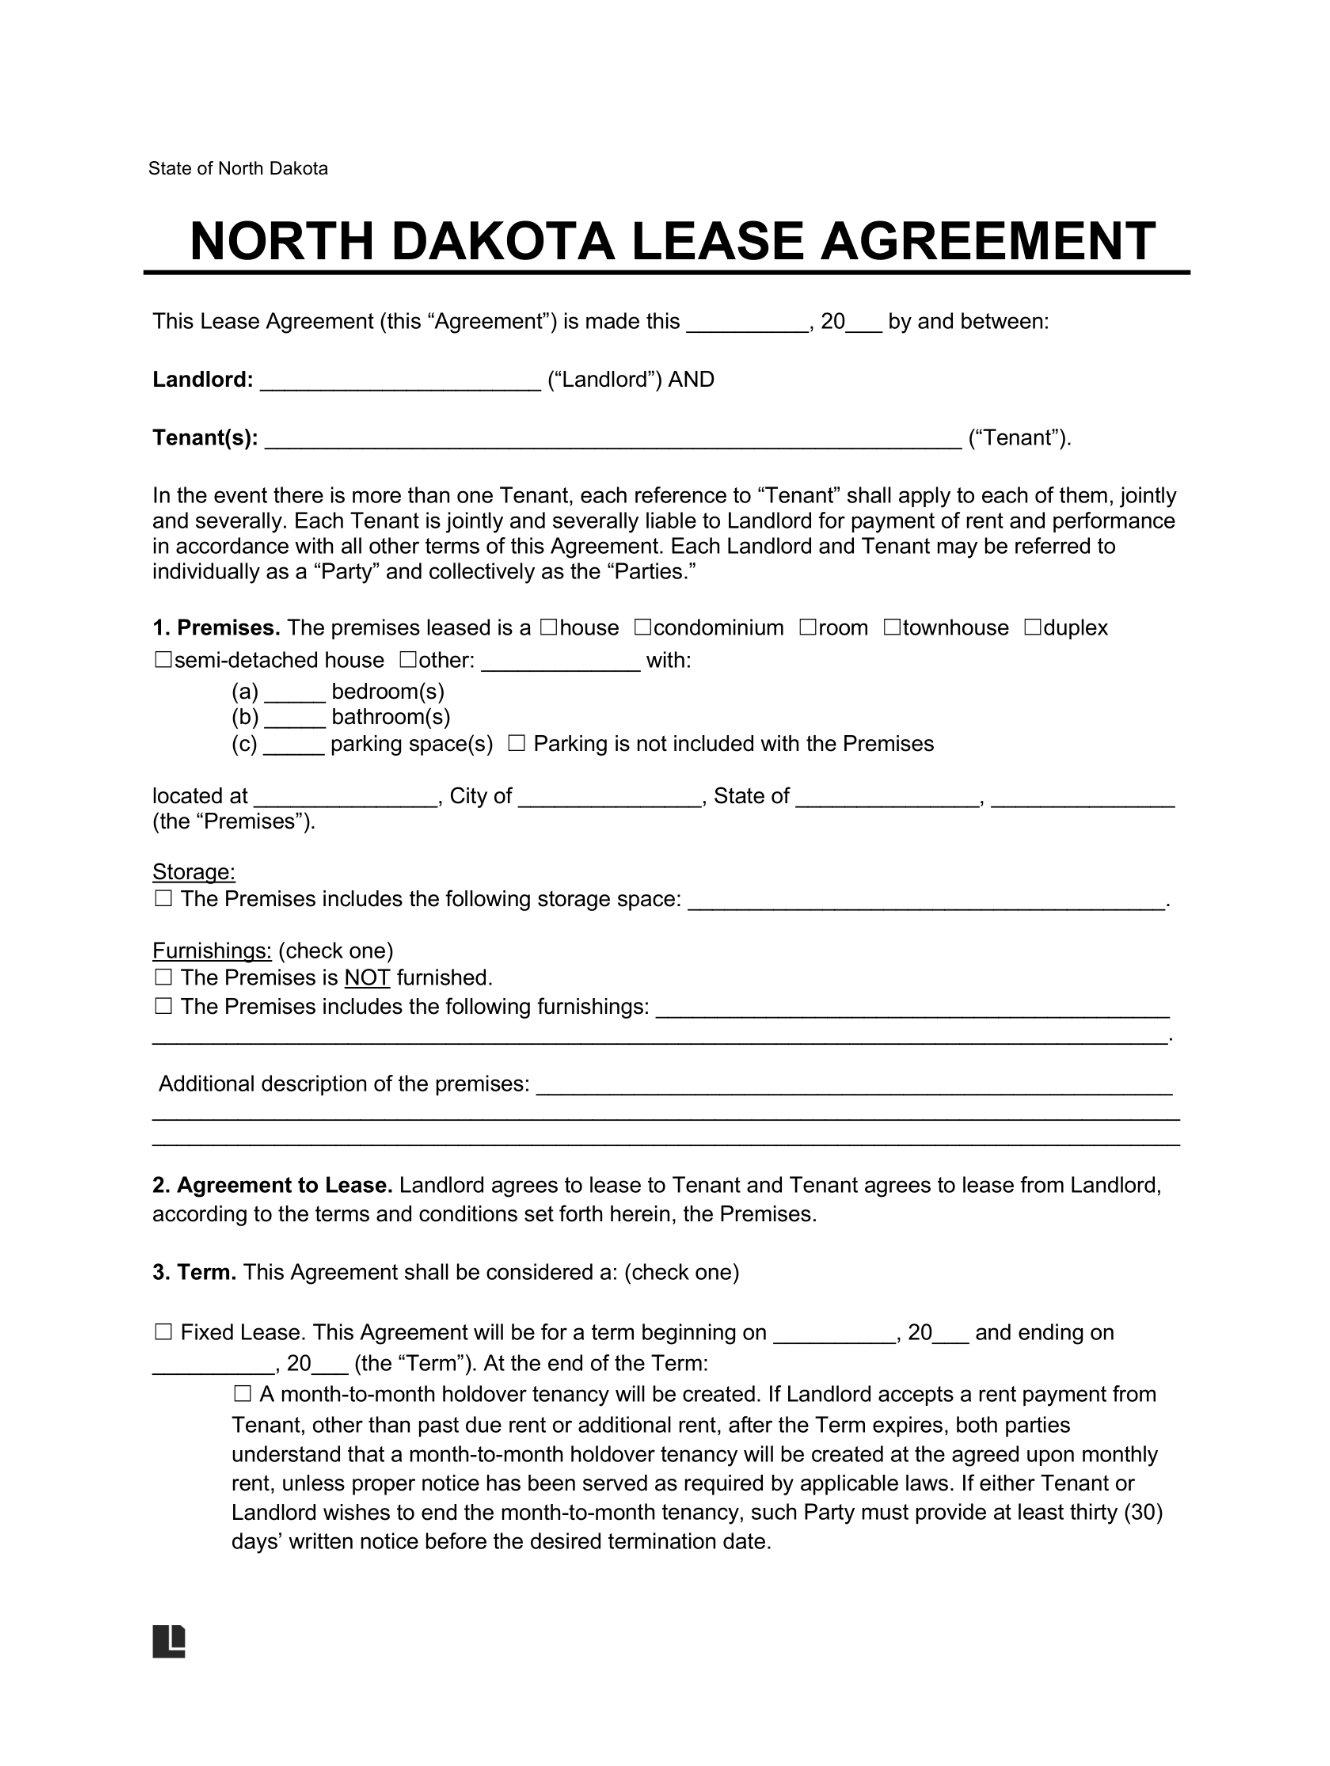 LegalTemplates North Dakota Residential Lease Agreement